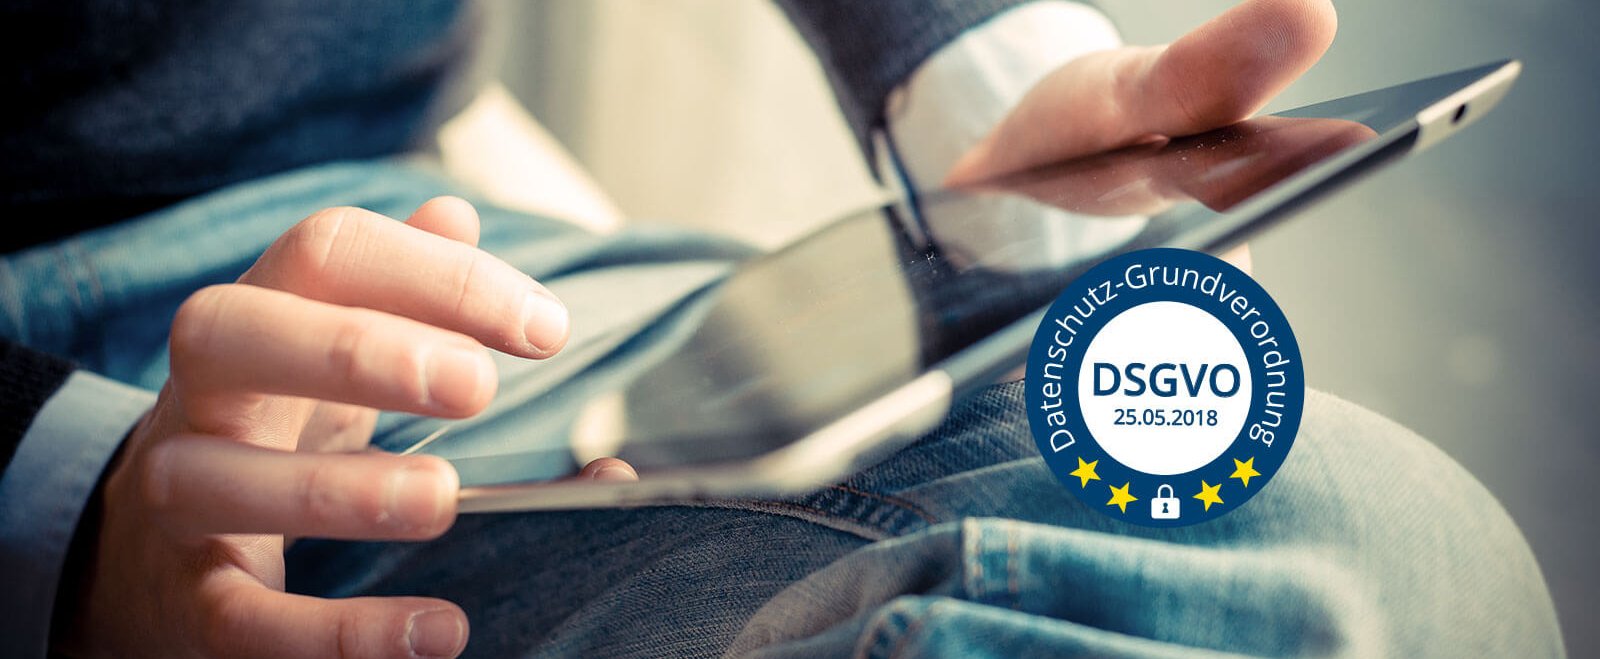 DSVGO EU-Datenschutzgrundverordnung Die Datenschutz-Grundverordnung kommt